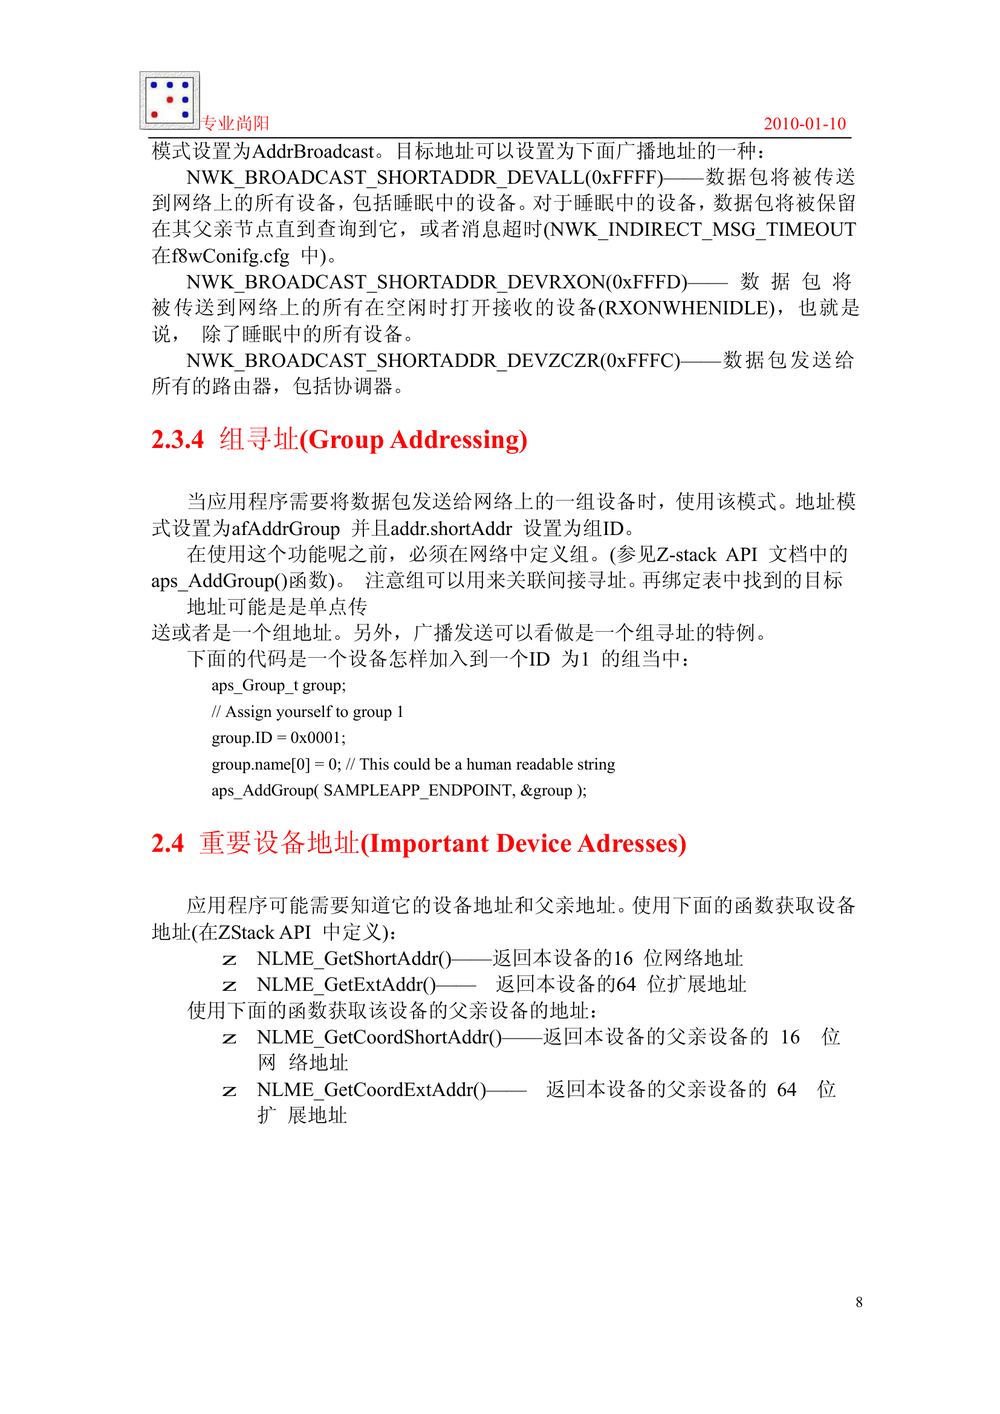 ZigBee 2006协议栈_开发指导手册_专业尚阳.PDF-第8页.png